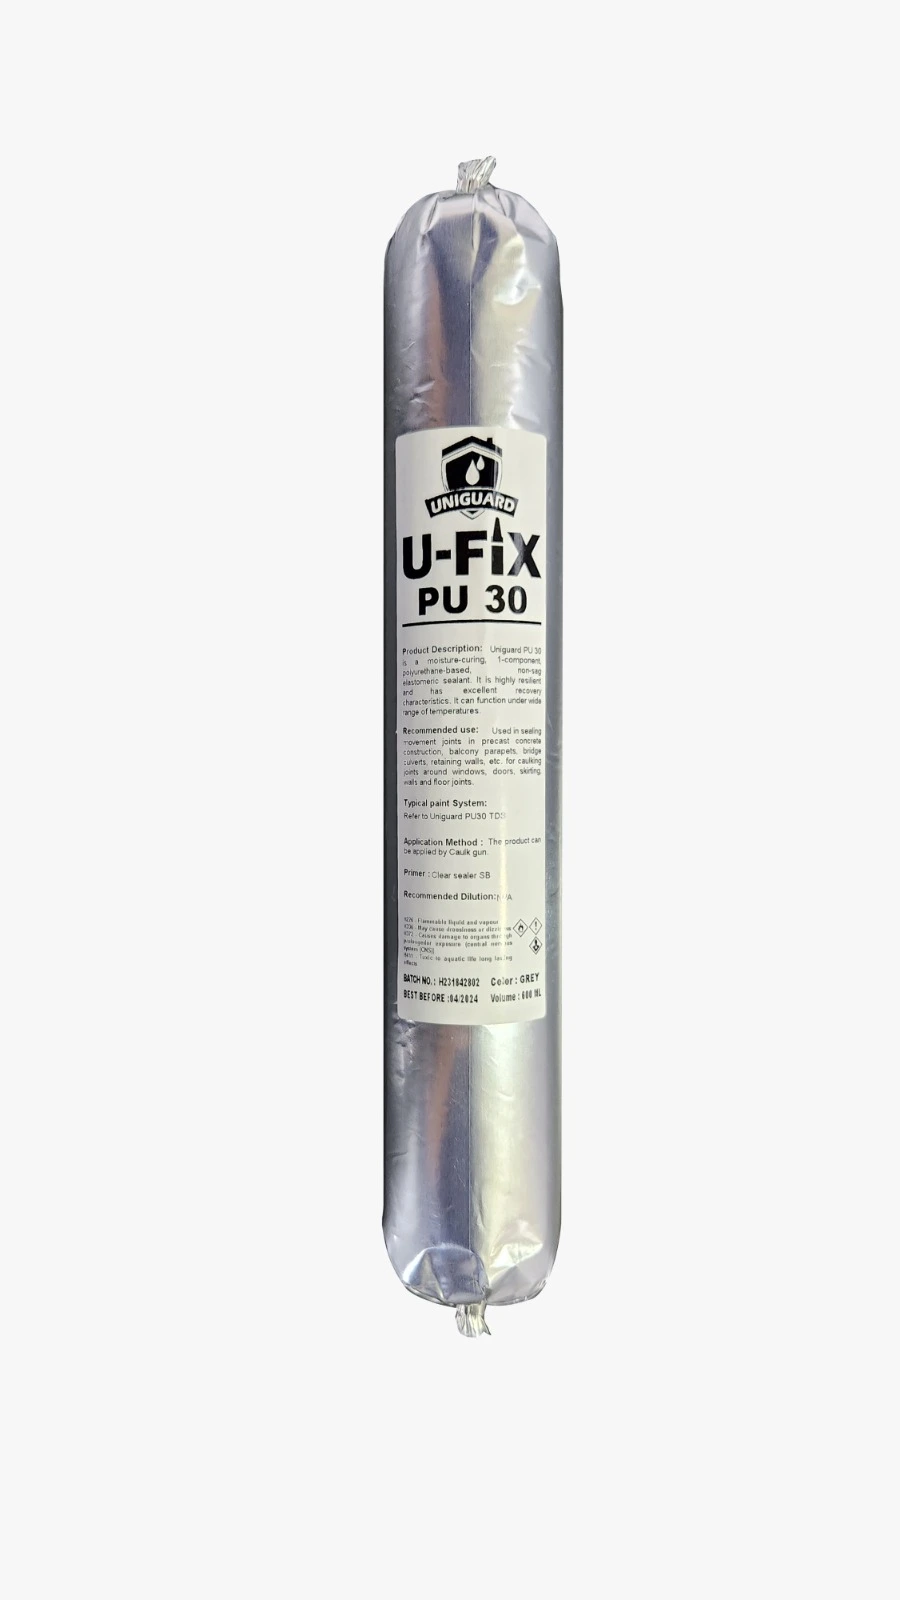 U-Fix PU 30